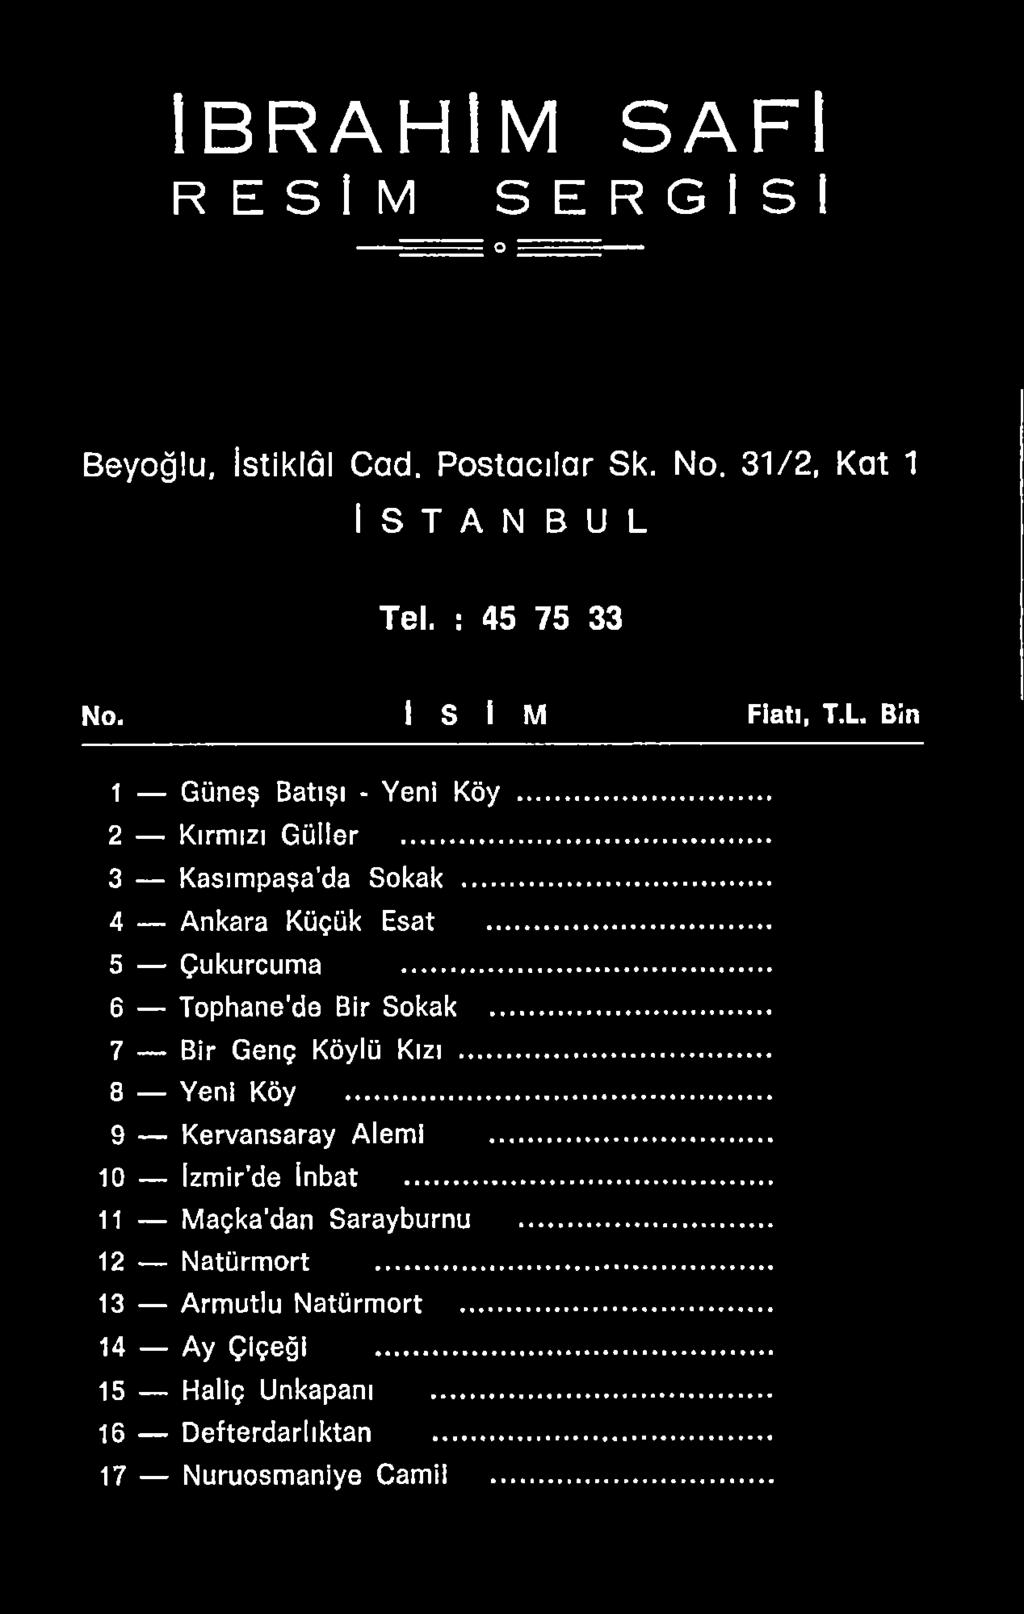 .. 9 Kervansaray Alemi... 10 İzmir de Inbat... 11 Maçka'dan Sarayburnu... 12 Natürmort.